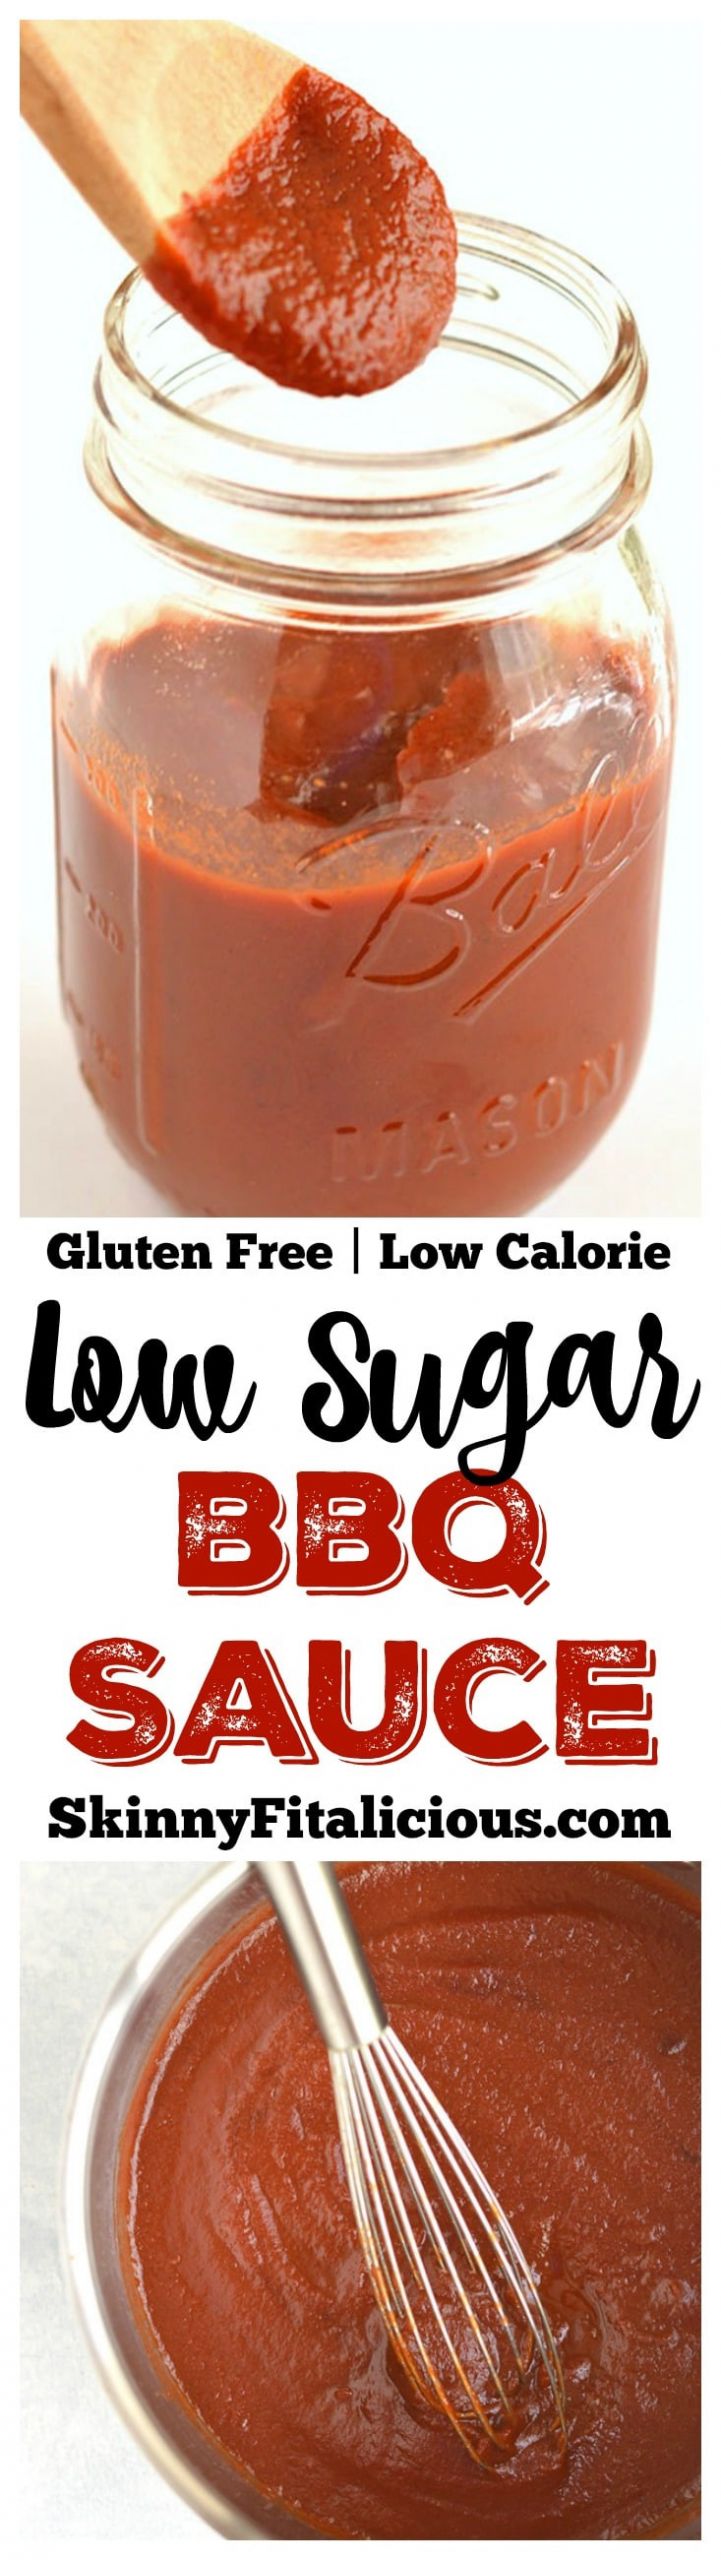 Low Calorie Bbq Sauce Recipe
 Low Sugar BBQ Sauce Vegan GF Low Cal Skinny Fitalicious